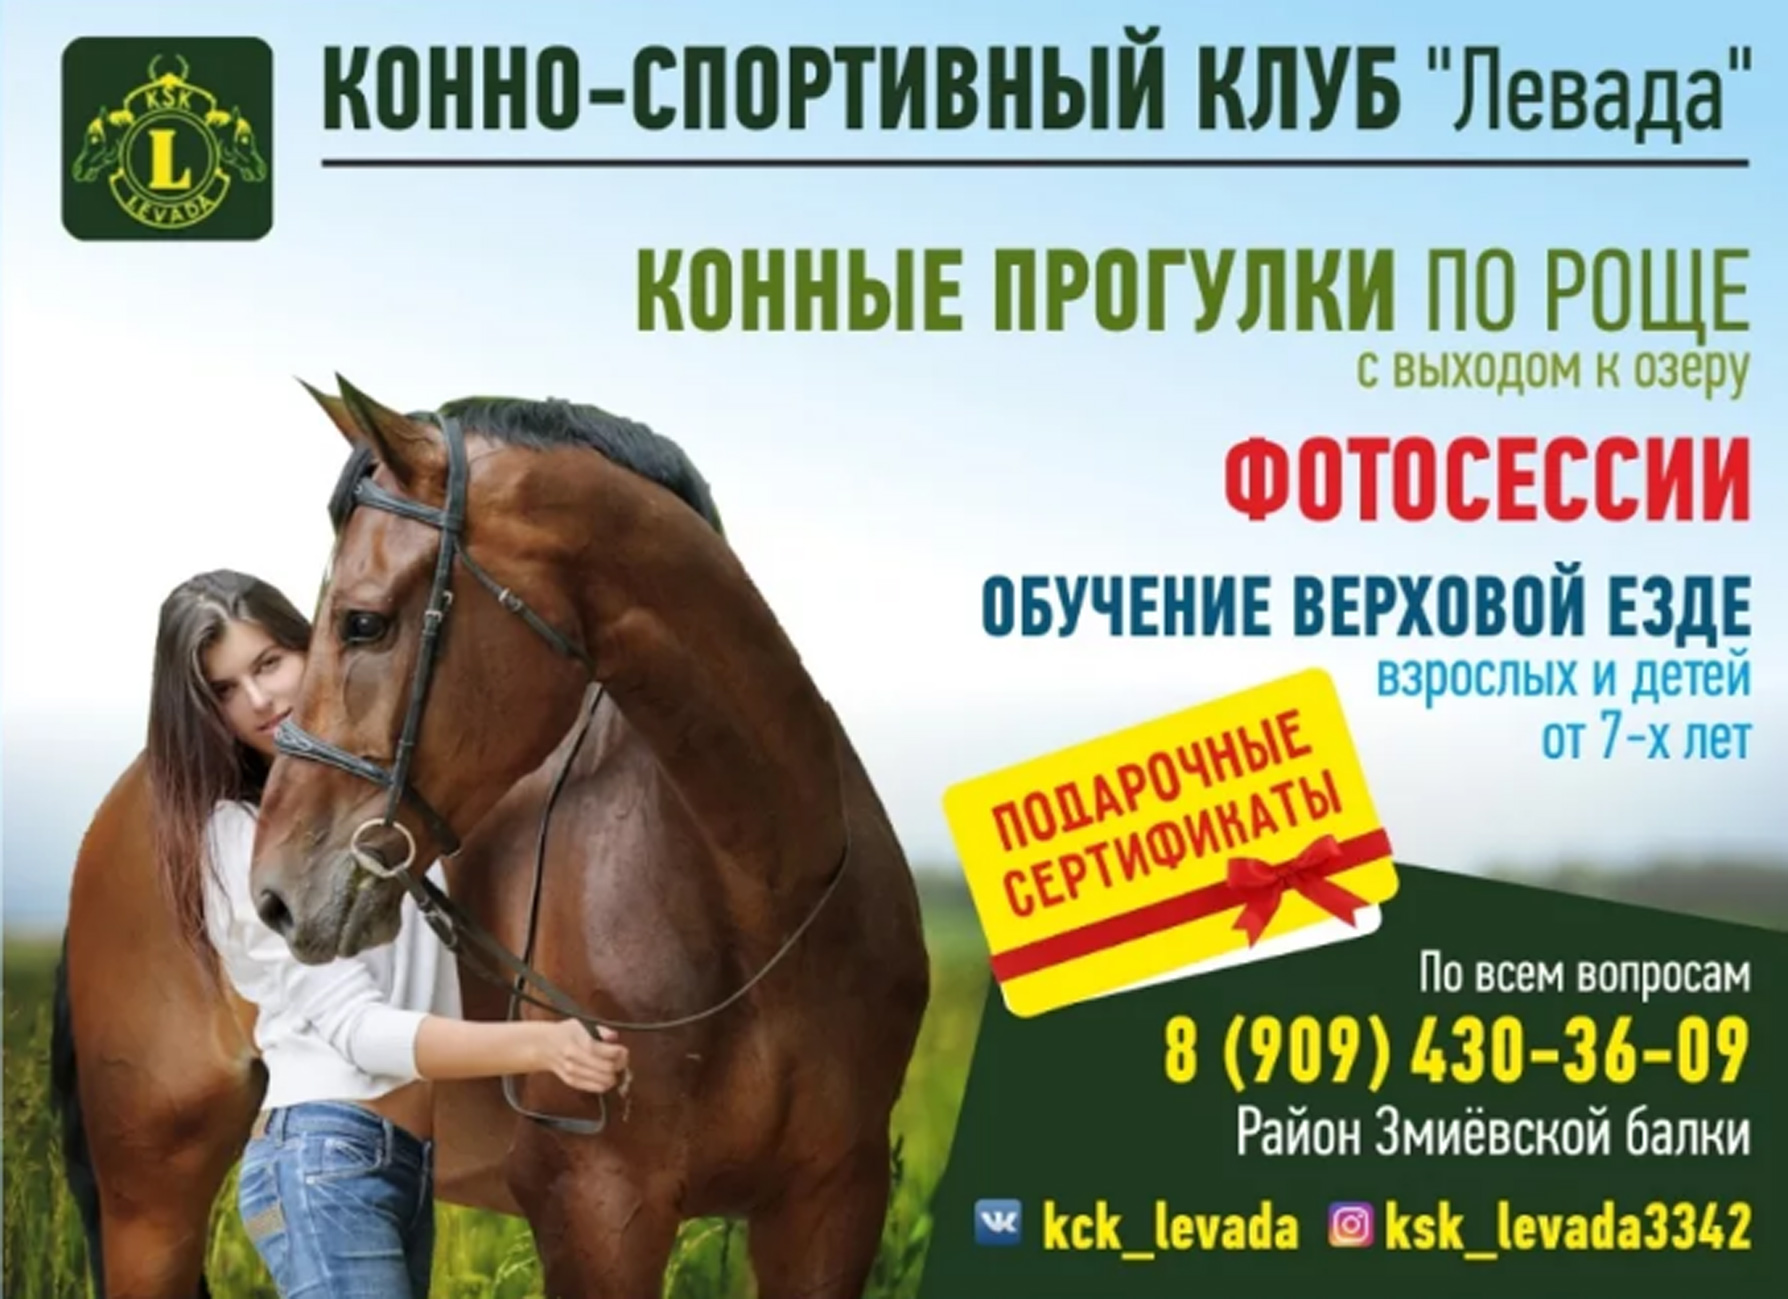 Кск объявления работа. Реклама конного клуба. Конные прогулки реклама. Реклама конного спорта. Конно-спортивный клуб реклама.